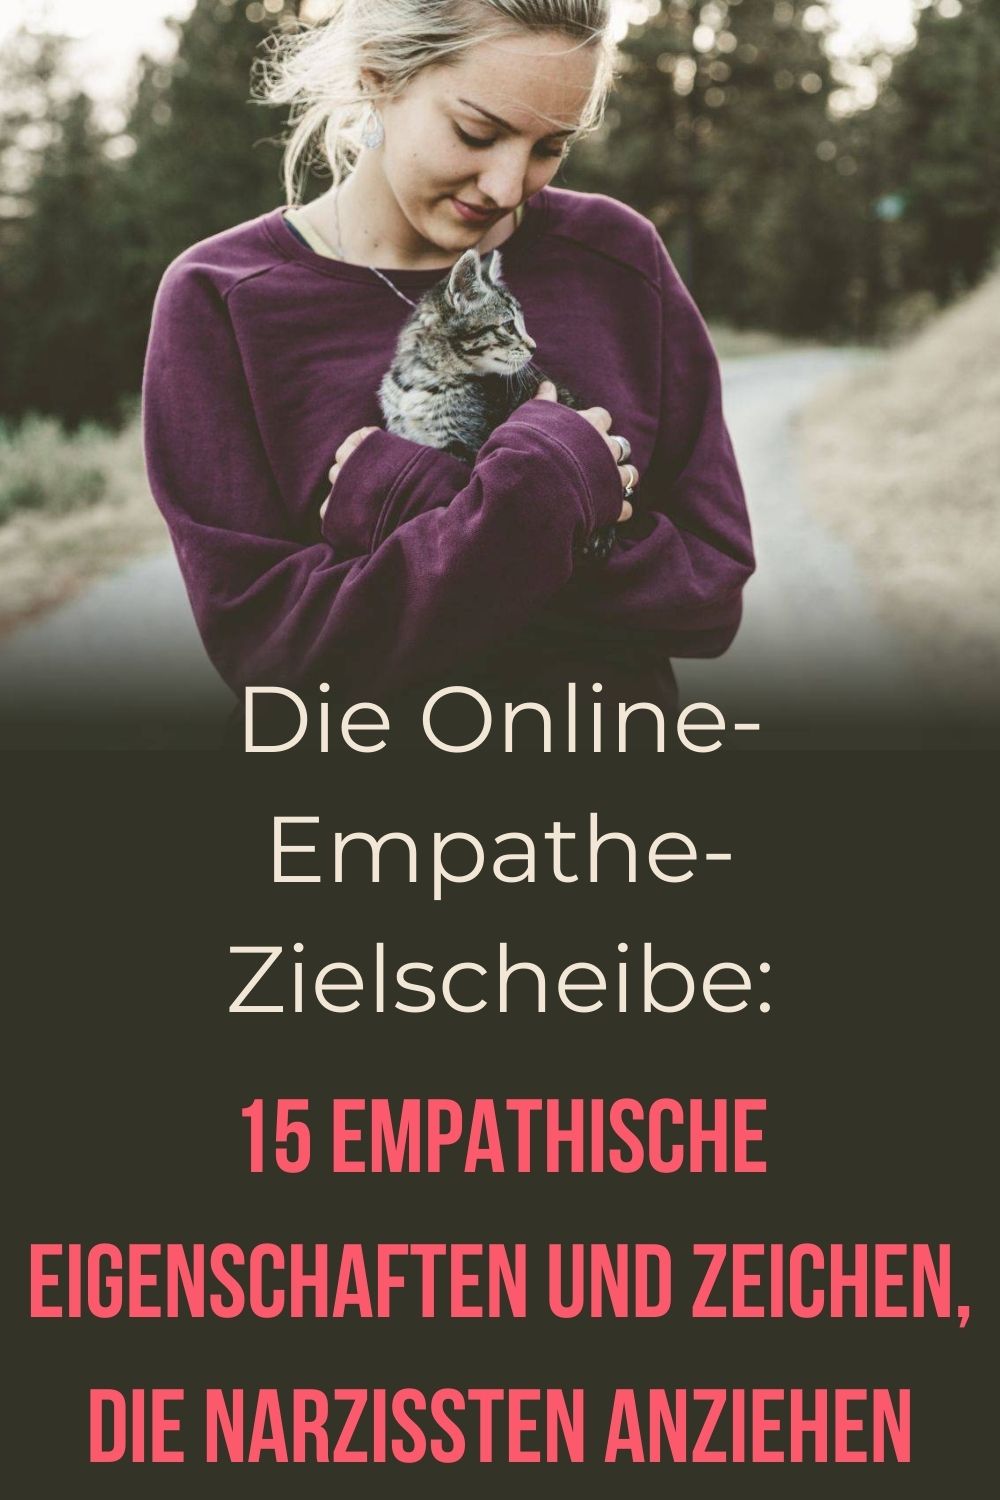 Die-Online-Empathe-Zielscheibe-15-empathische-Eigenschaften-und-Zeichen-die-Narzissten-anziehen